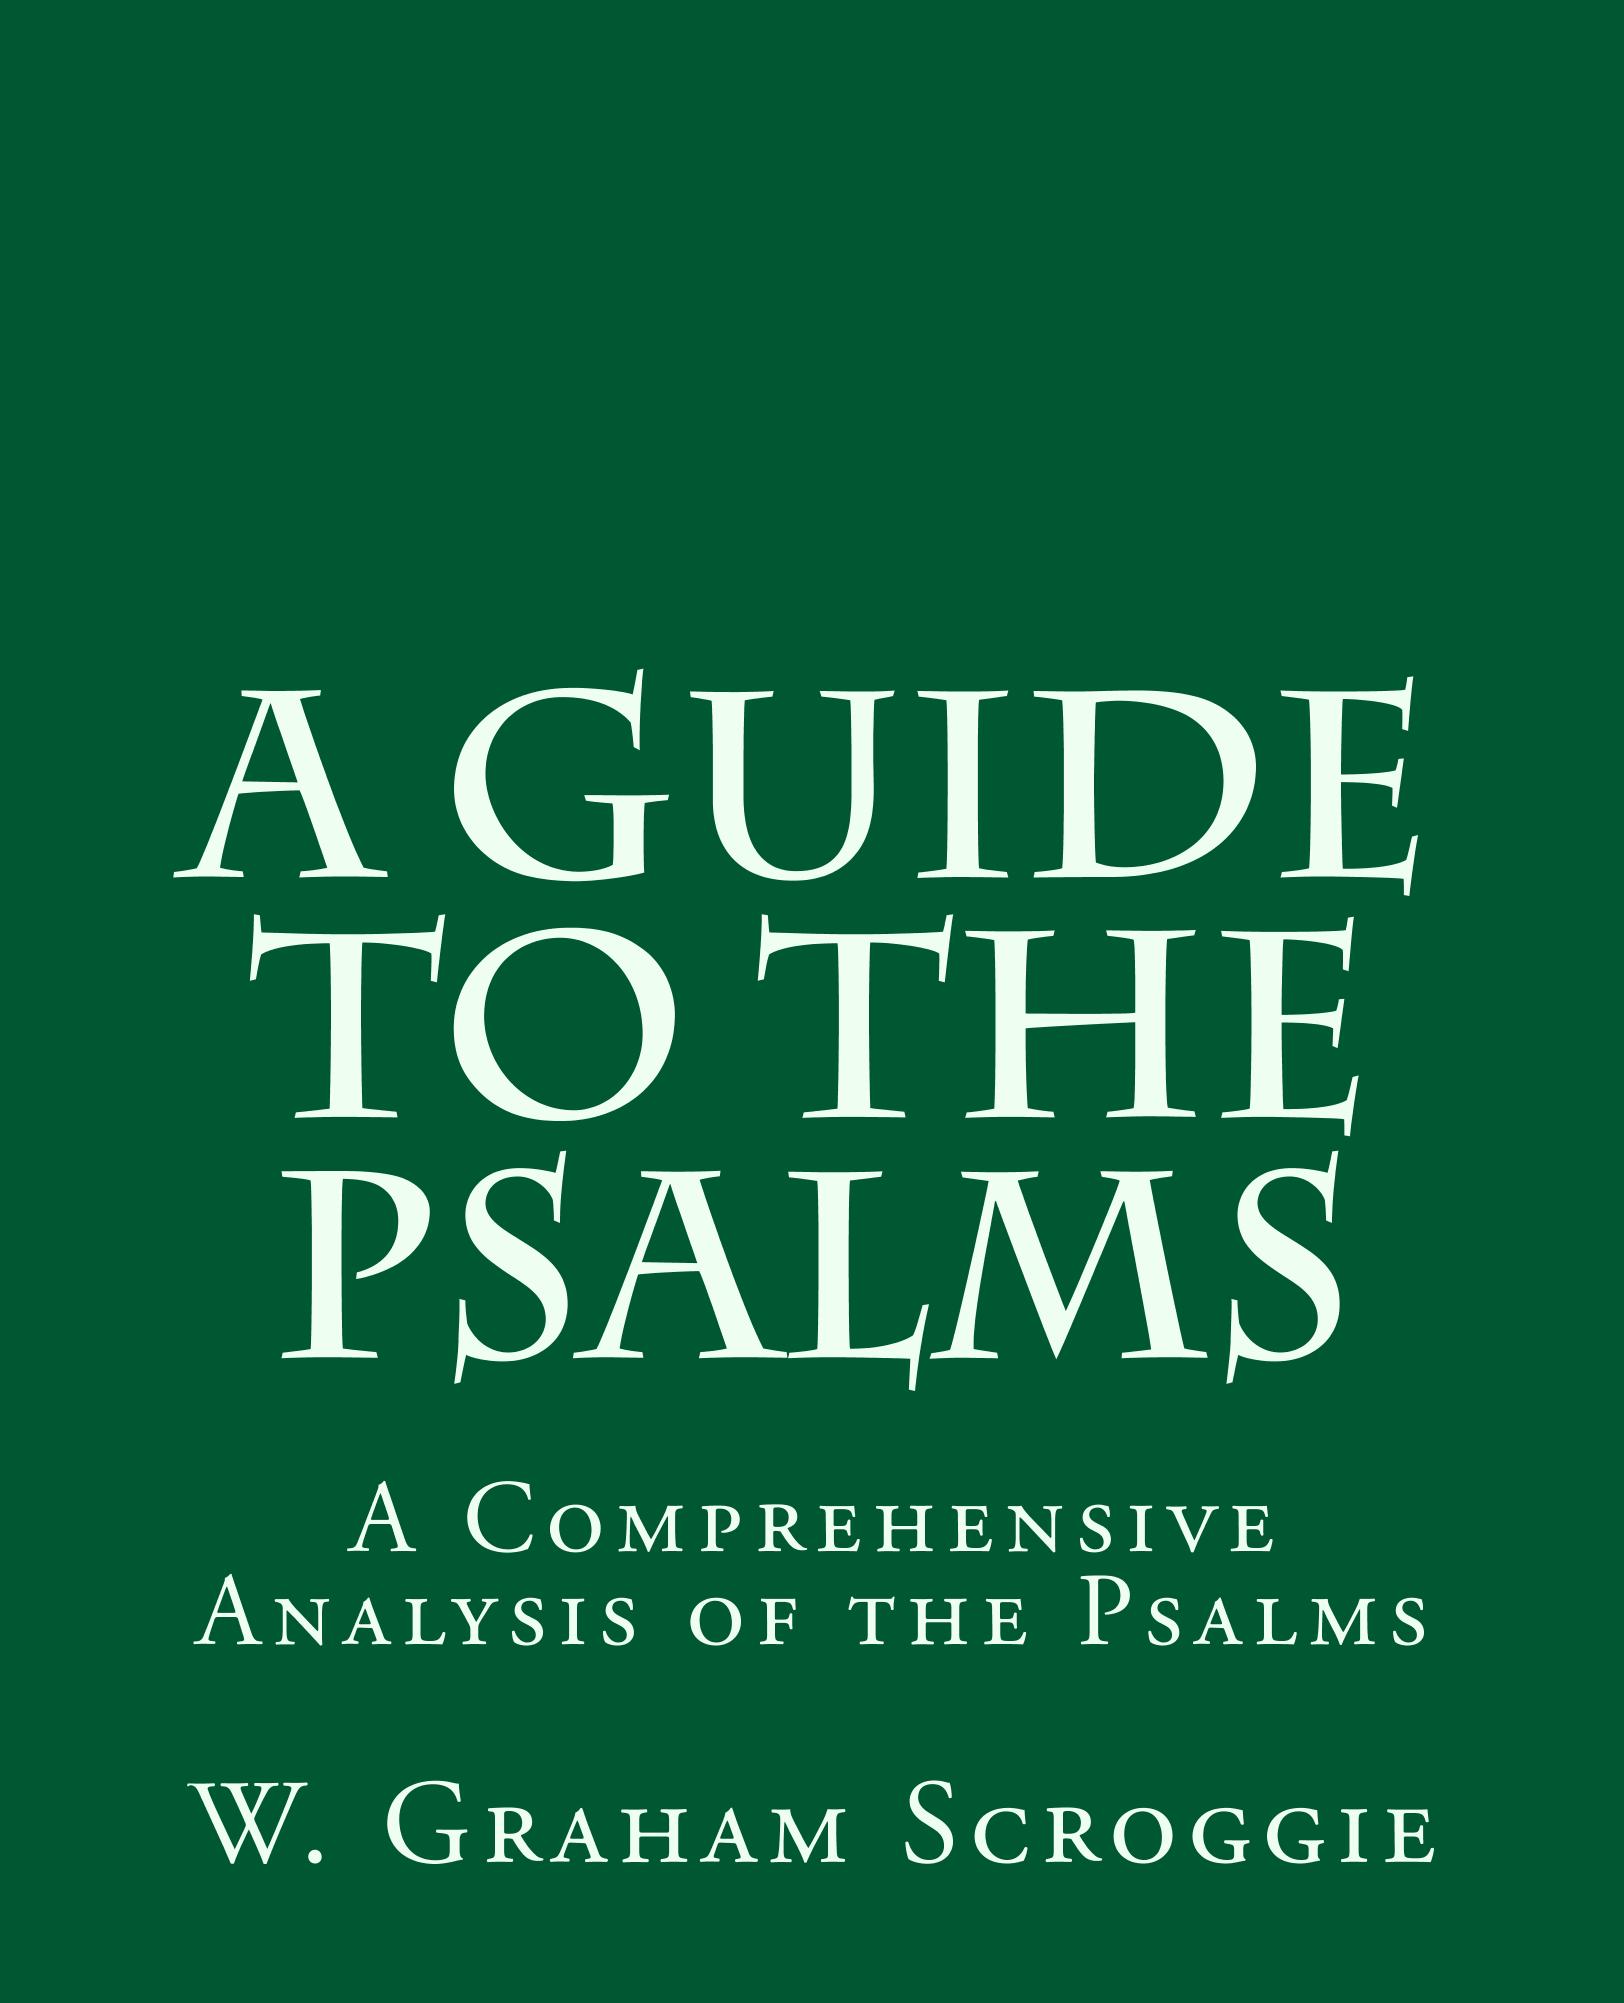 Psalm 137 literary analysis